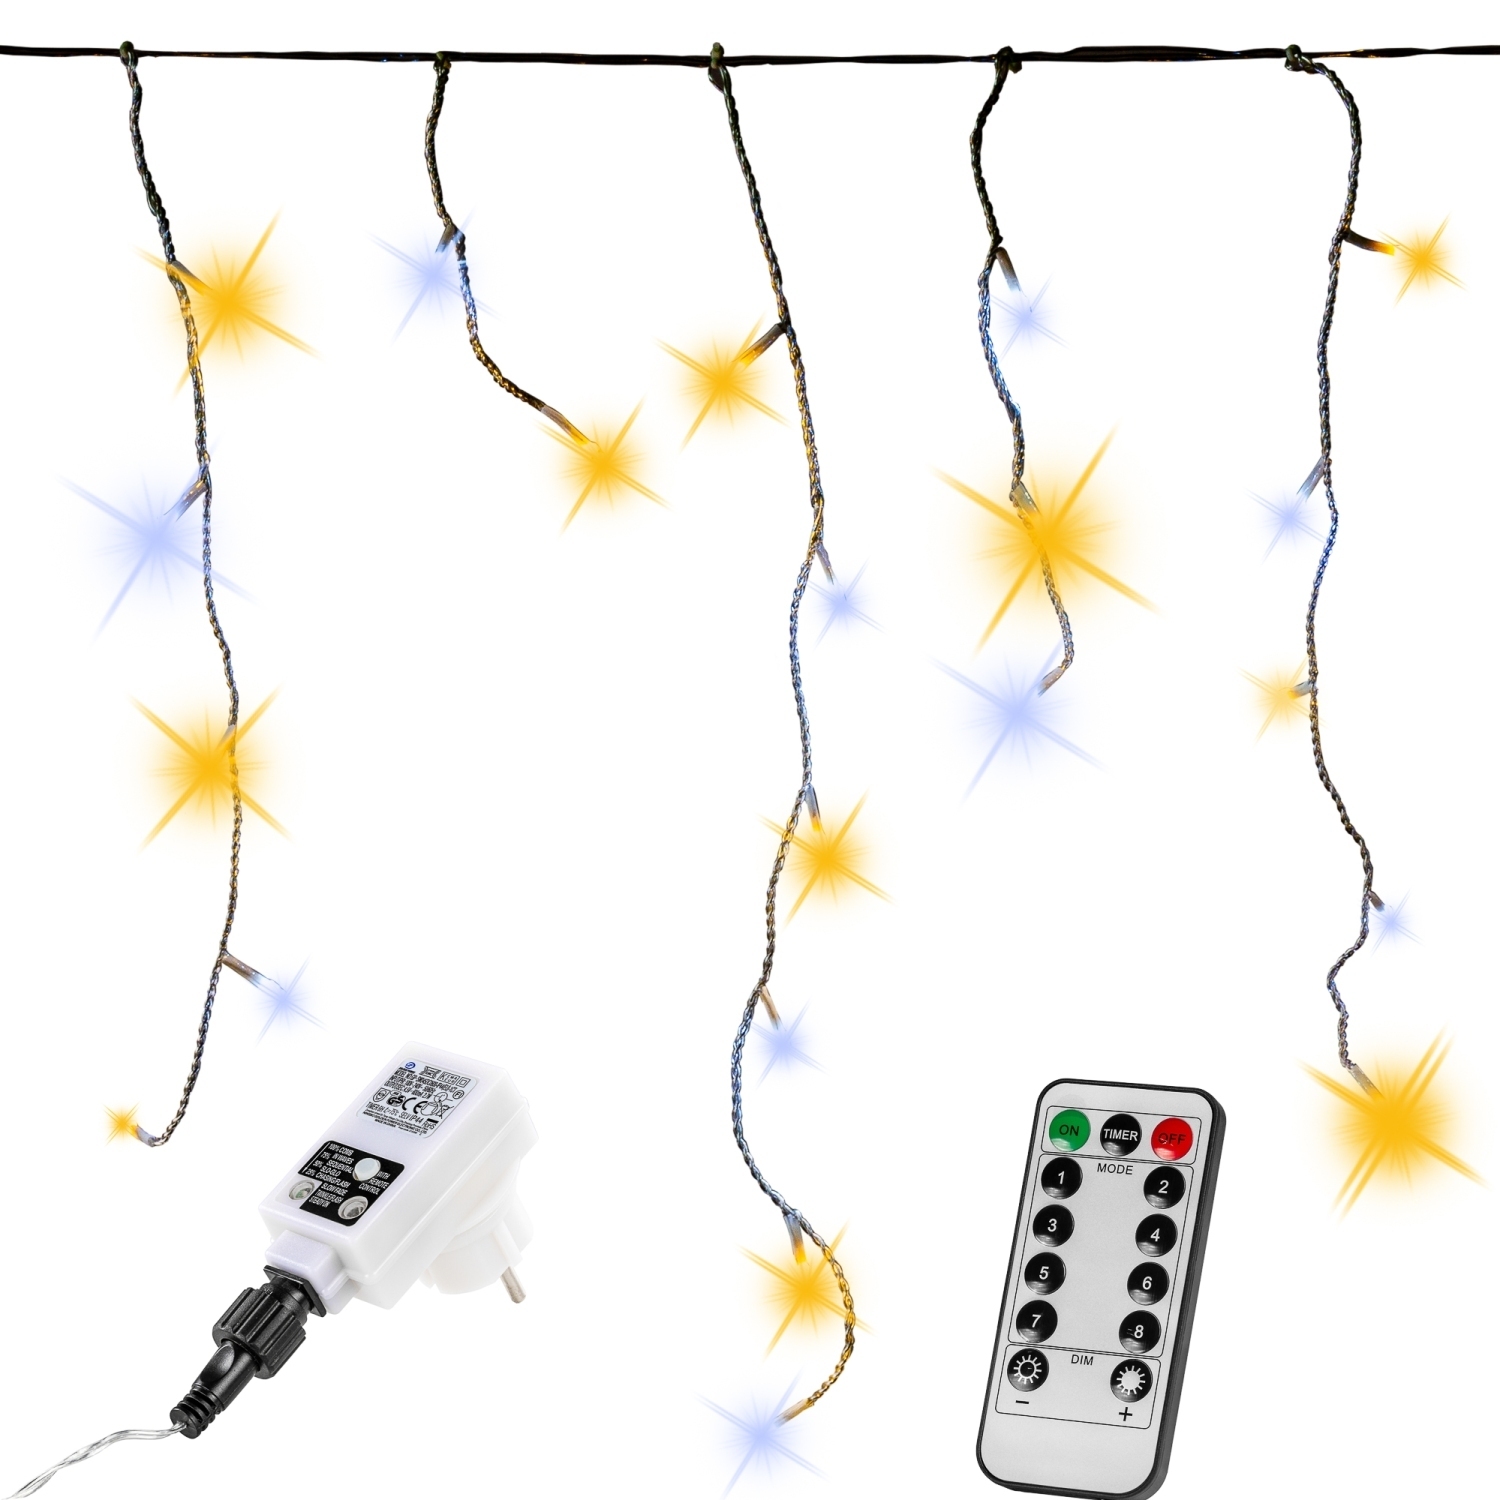 Lichtgordijn – Ijspegelverlichting – Voor Binnen en Buiten – Met afstandsbediening – 40 m – Warm koud